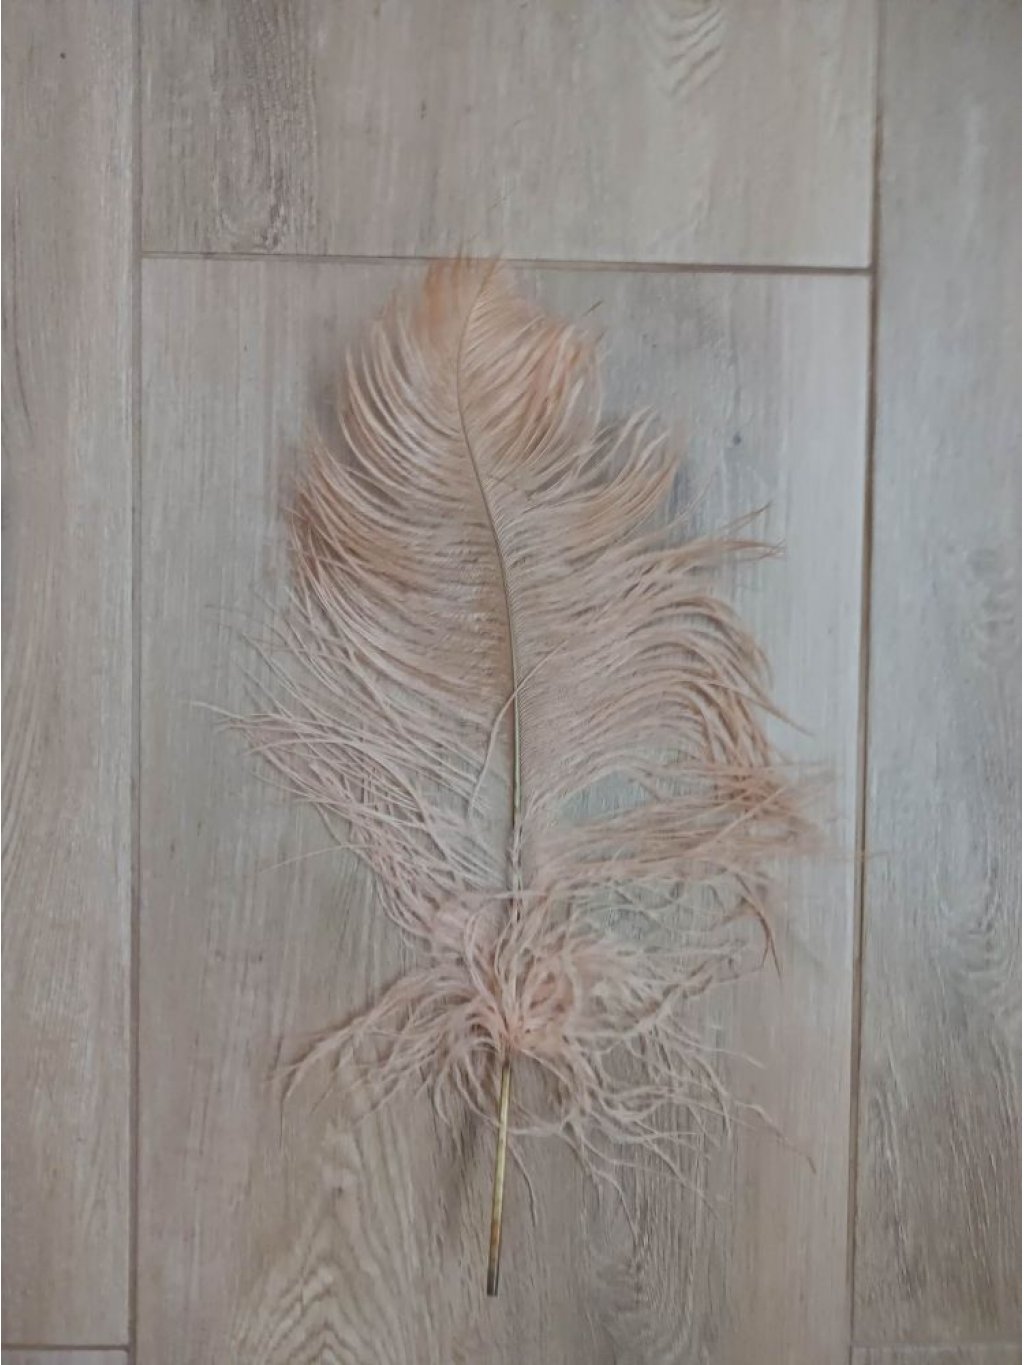 Pštrosí peří cibulové 35 - 40 cm